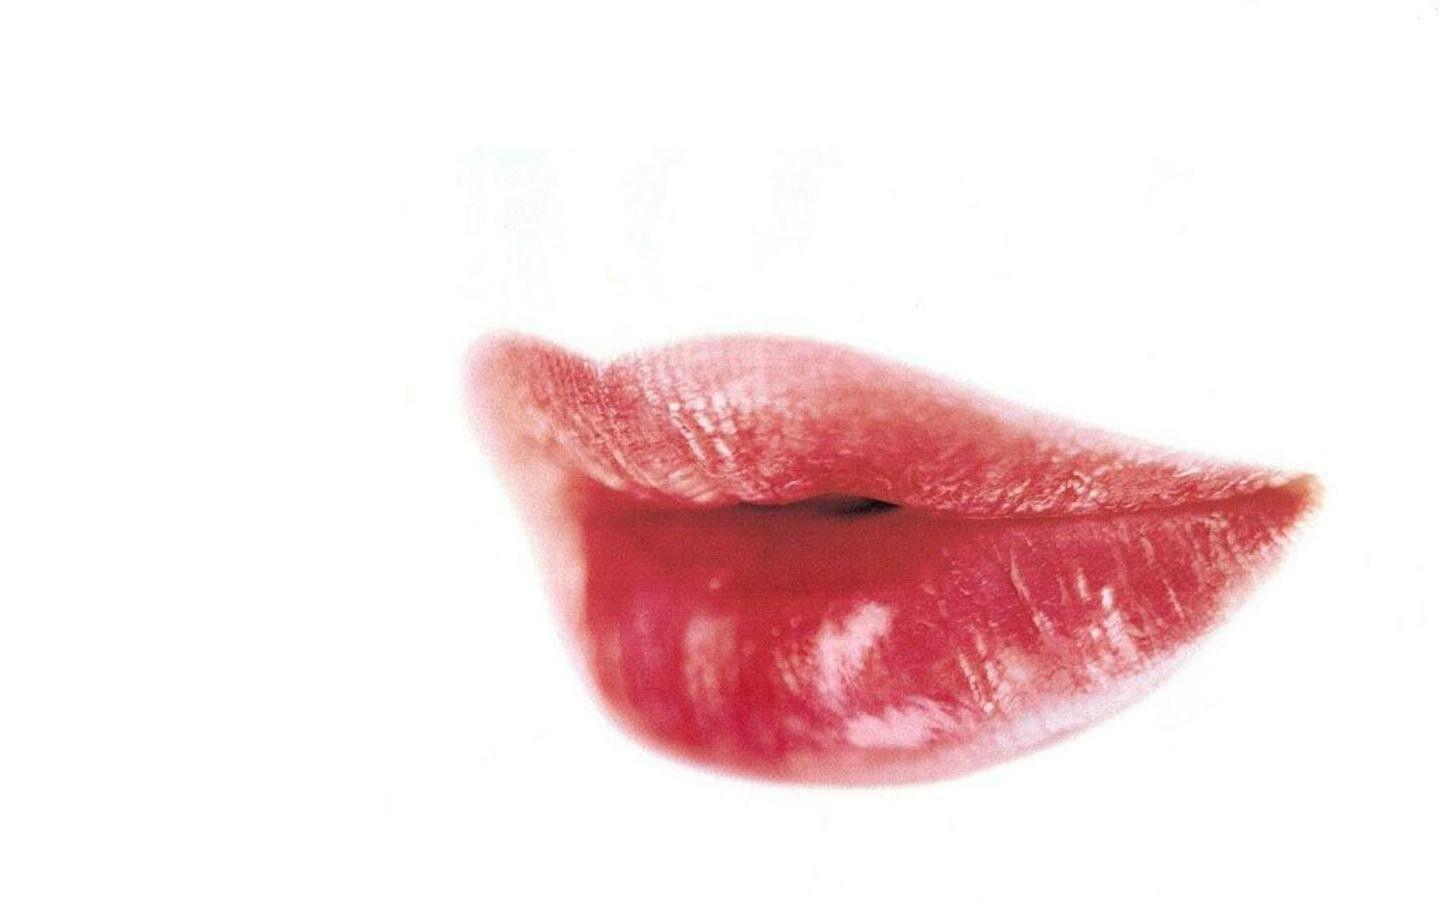 Wallpaper For > Red Lips Wallpaper